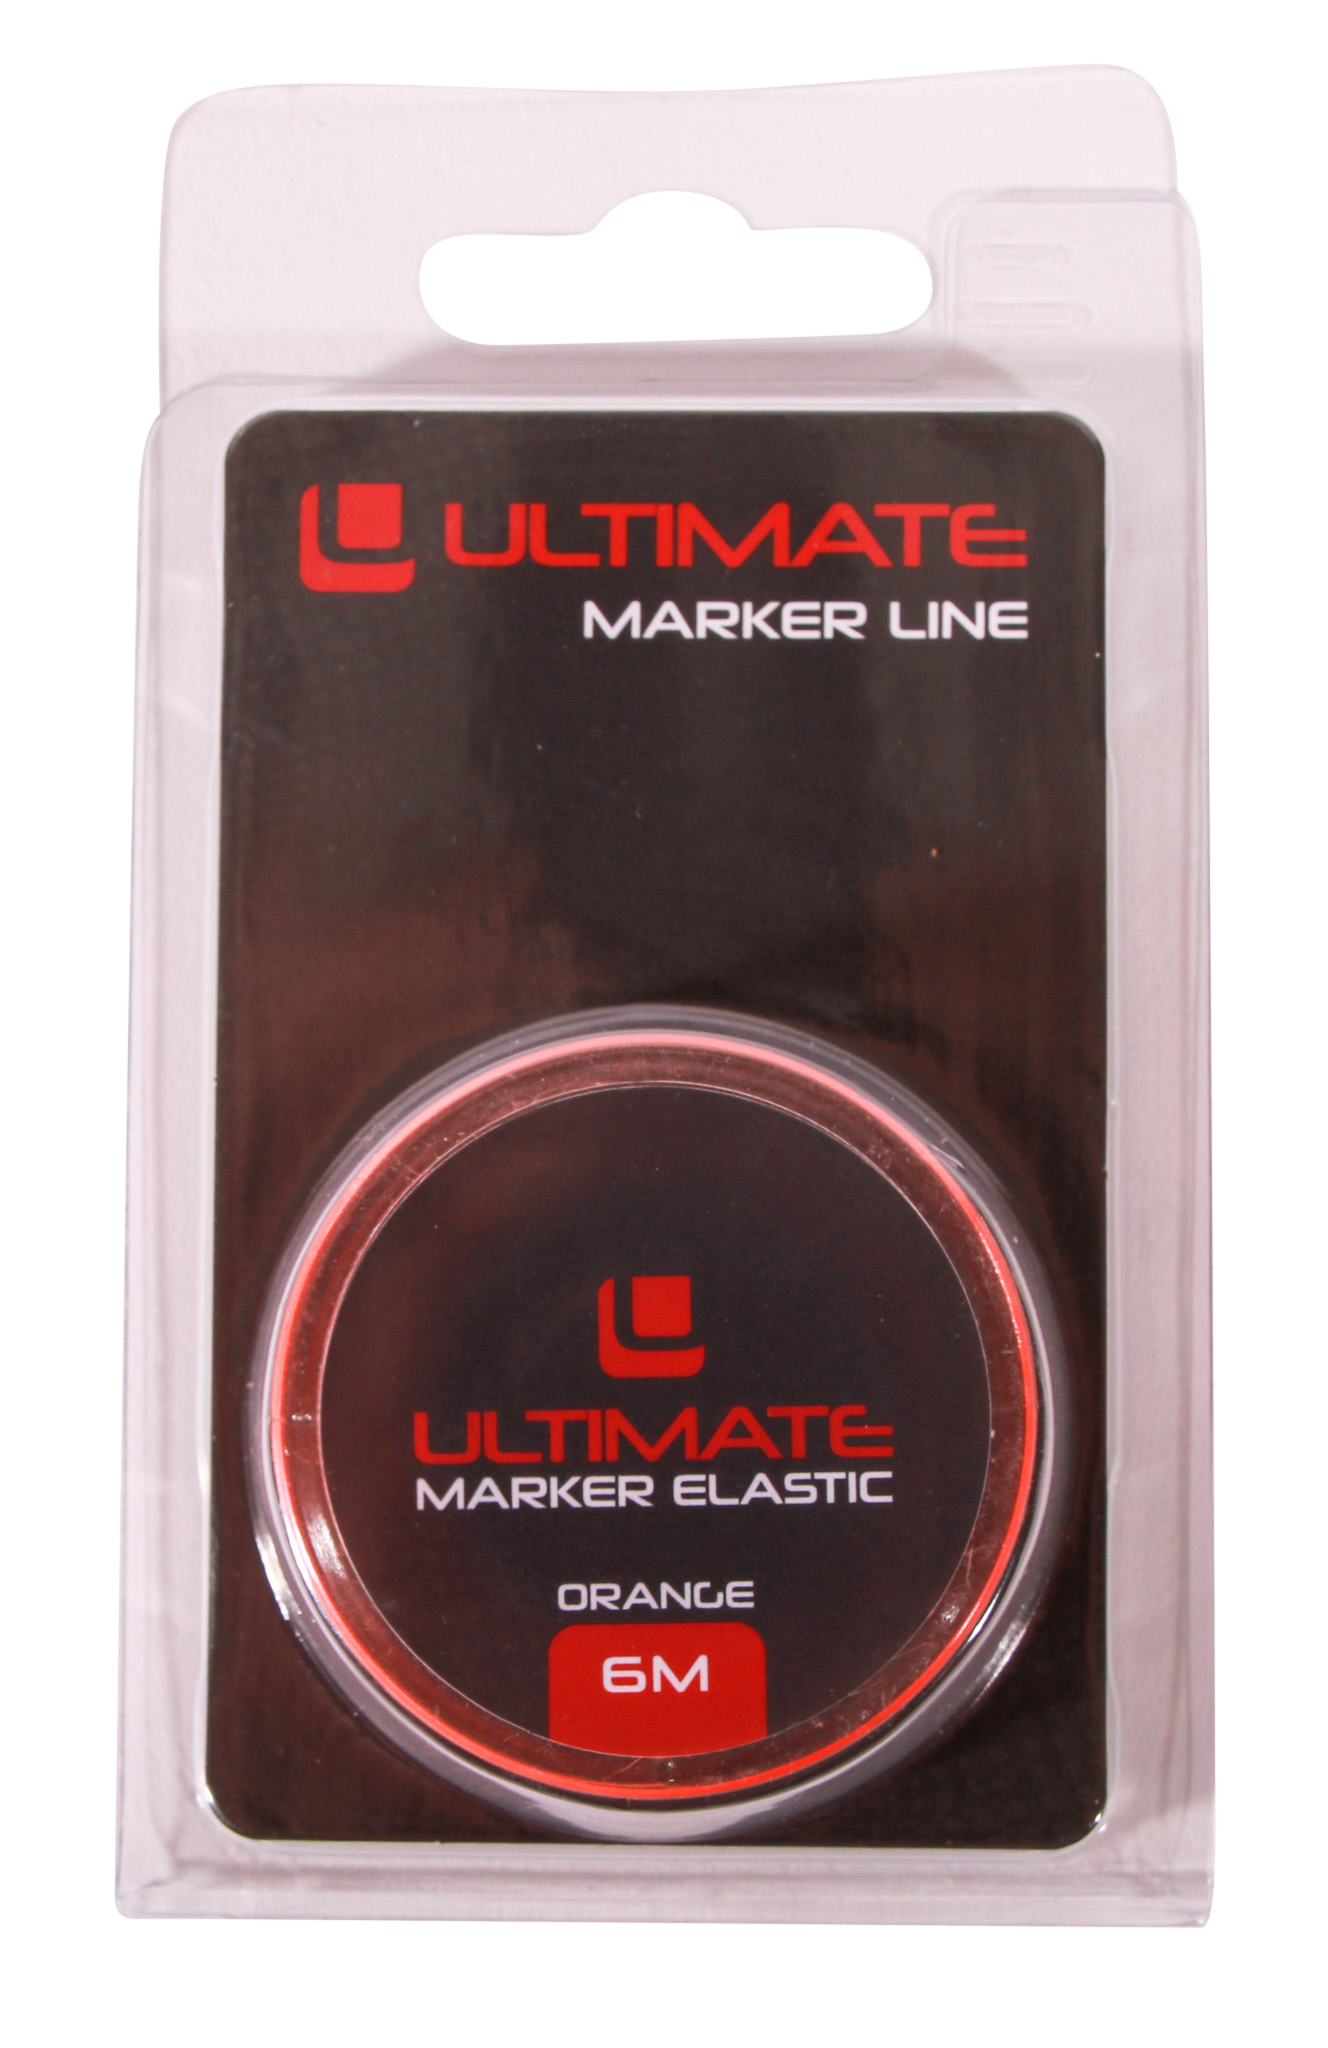 Elastique de marquage Ultimate Marker Elastic Orange (6m)